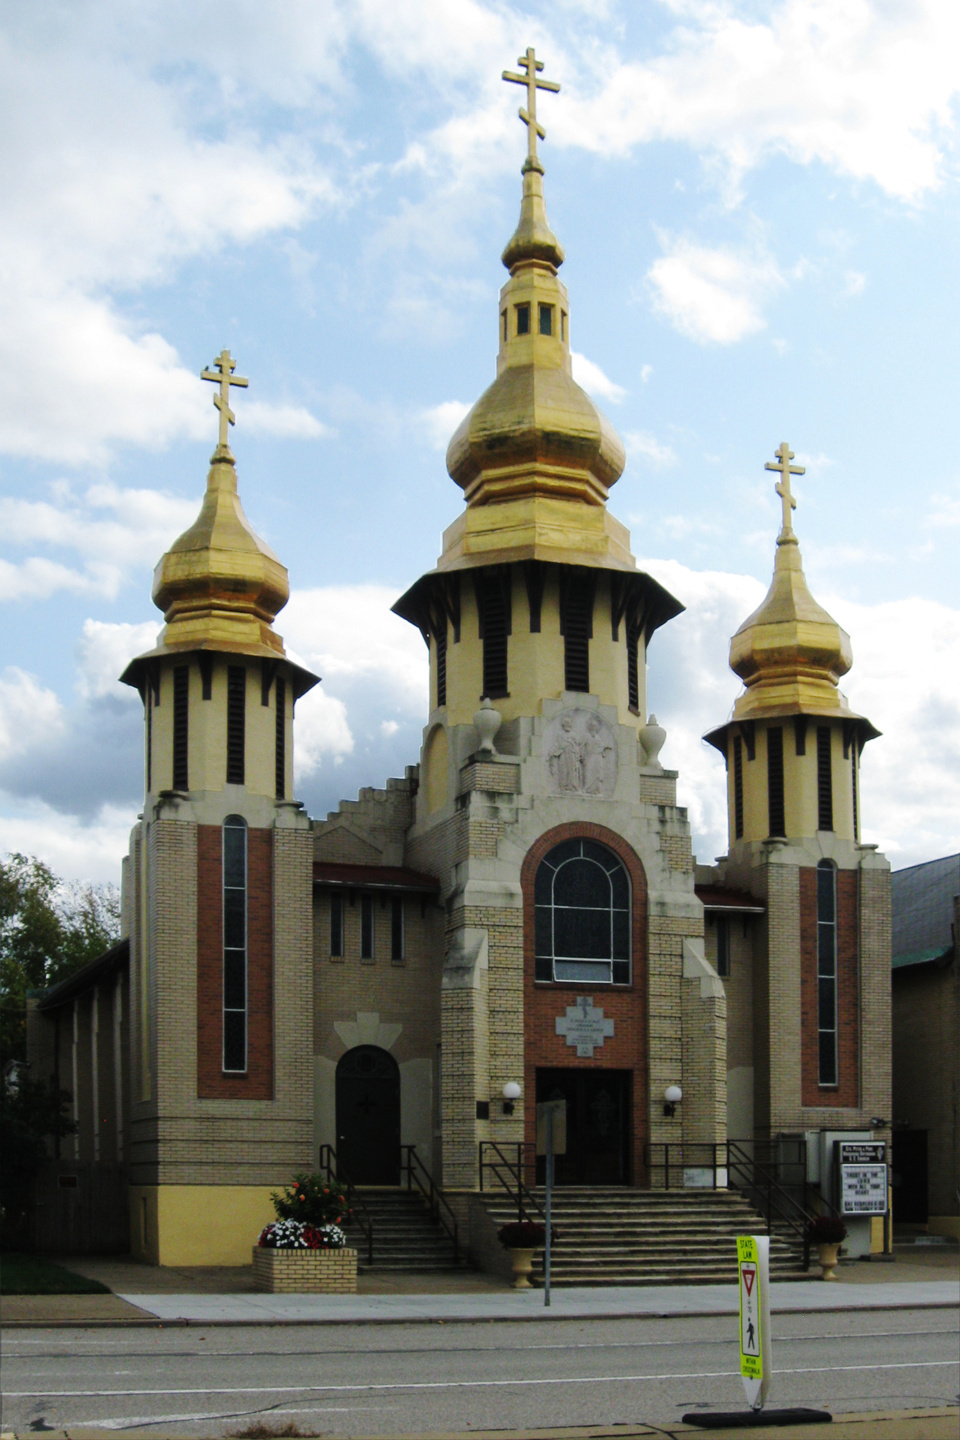 Carnegie (Pennsylvania), Szent Péter és Pál ukrán ortodox görögkatolikus templom, tervező: Bobula Titusz (Wikipedia/Cbaile19)